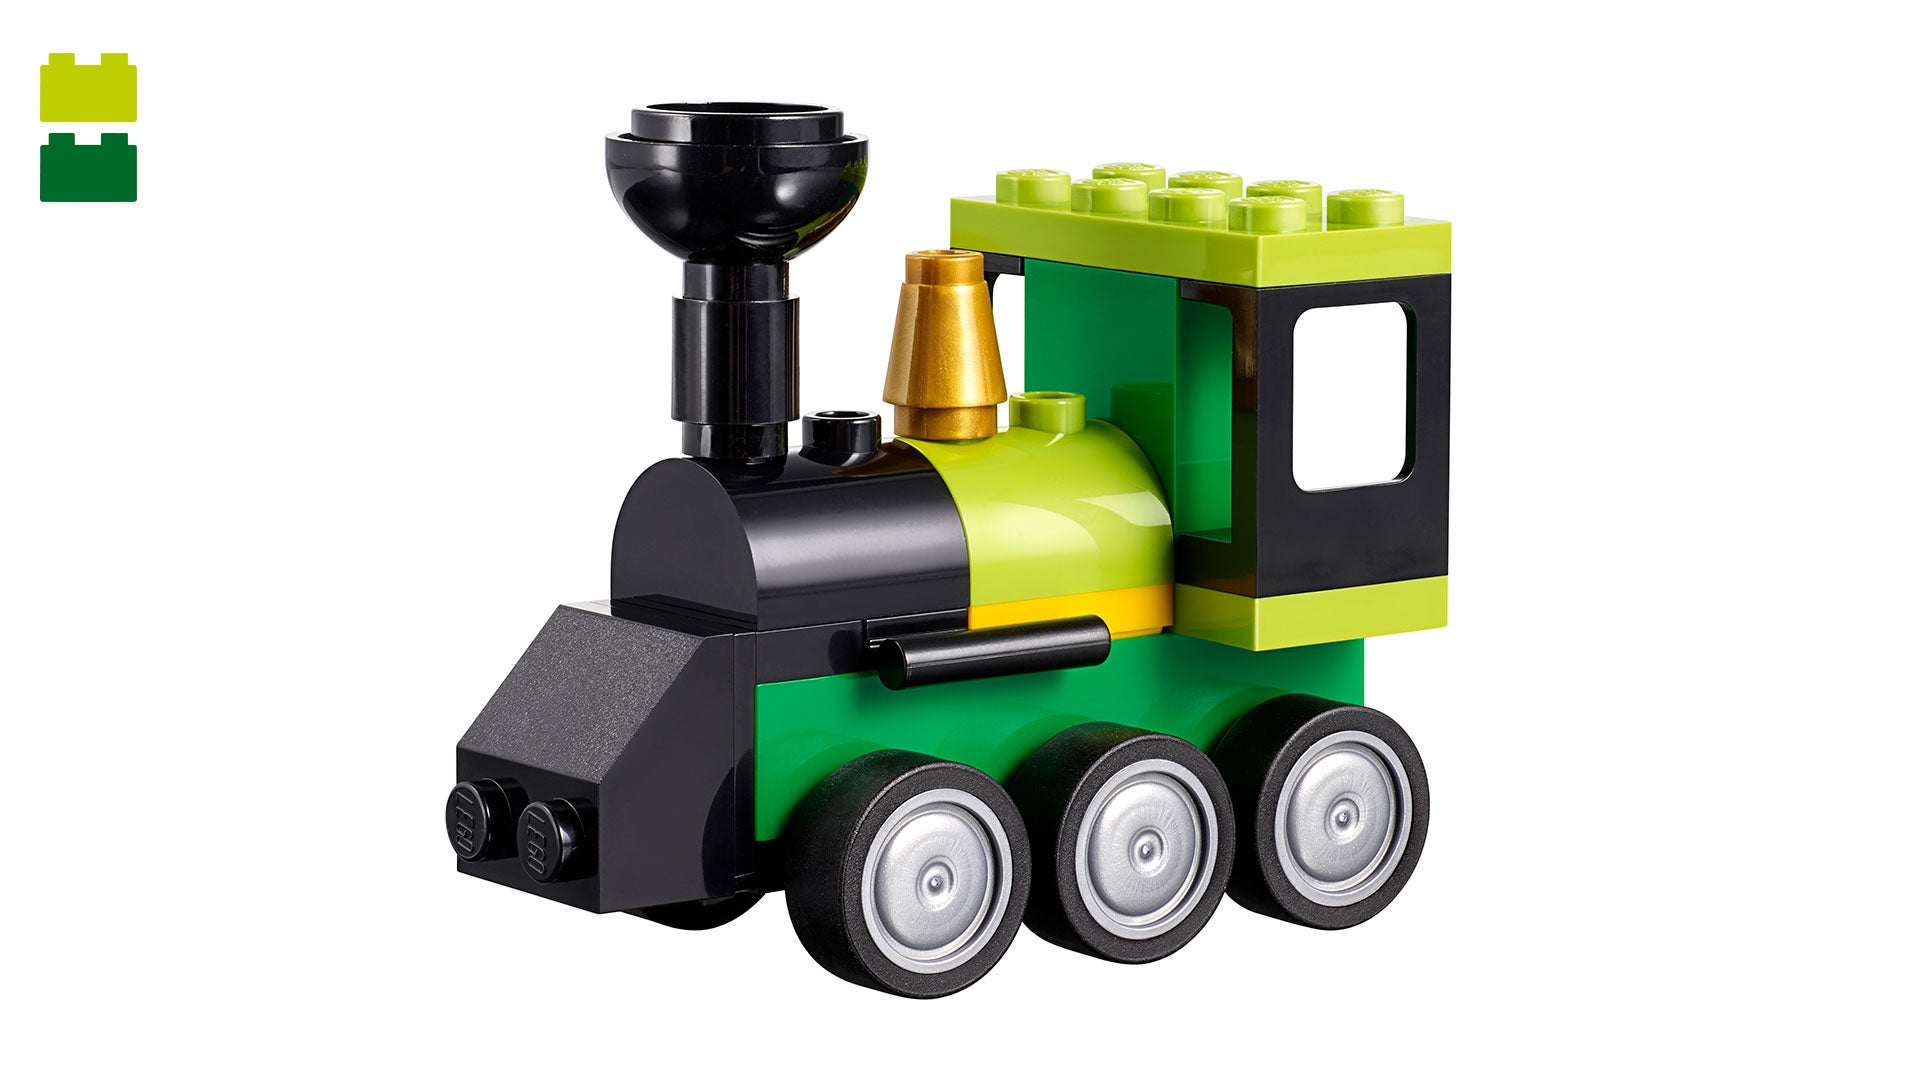 Instruction montage pylône d'éclairage train gare de trie V.1 LEGO NOTICE 